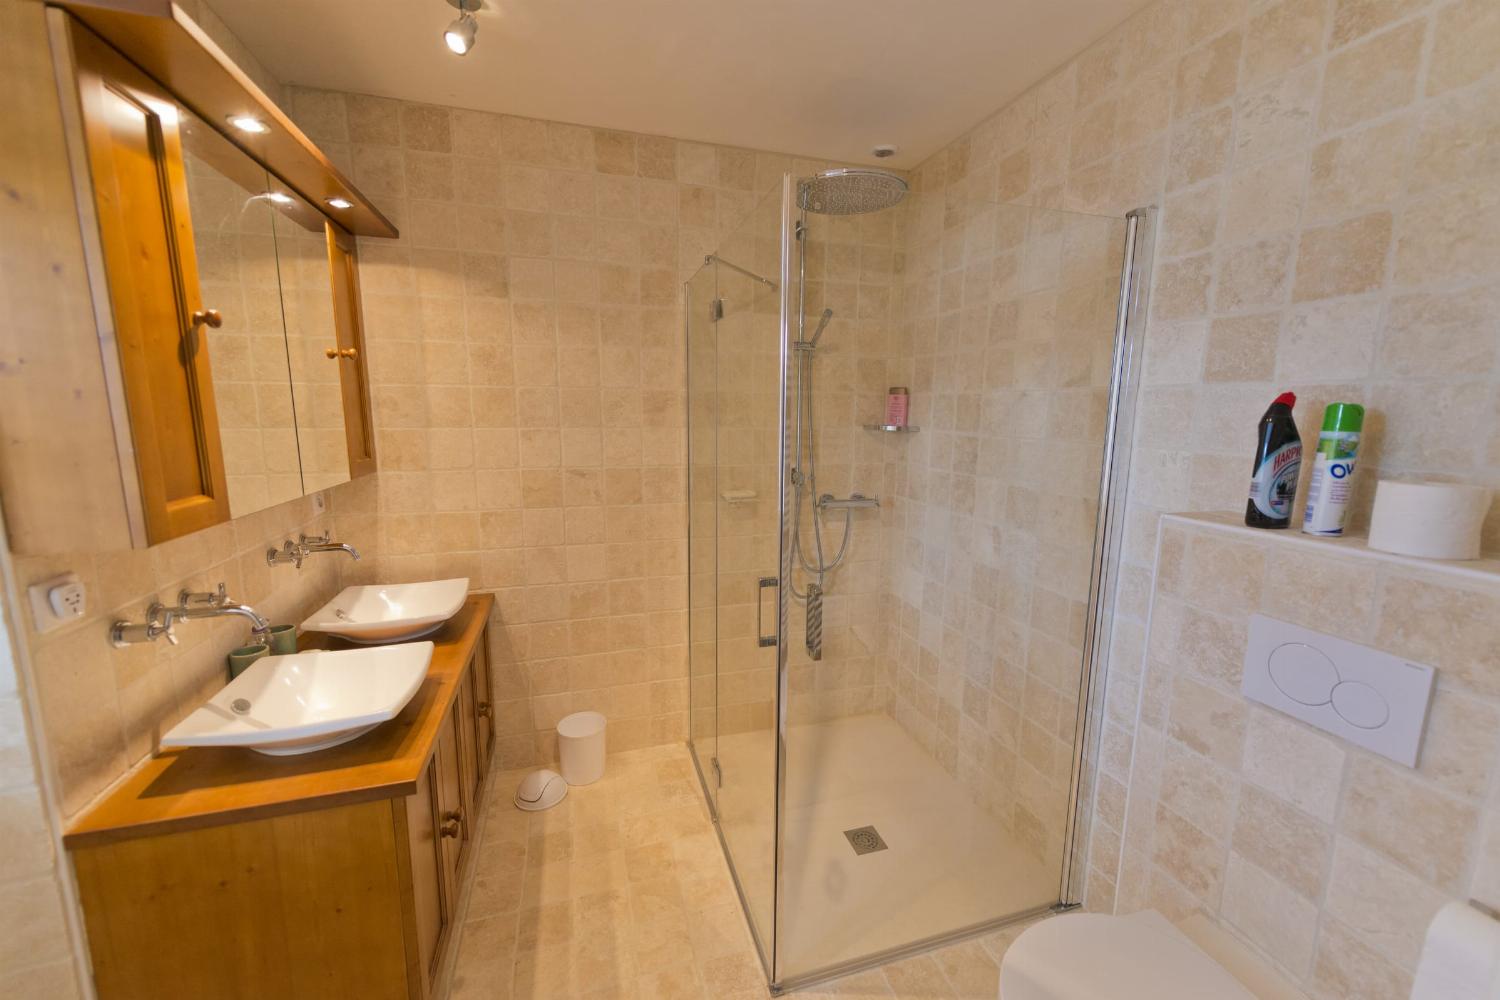 Bathroom | Rental home in Loire